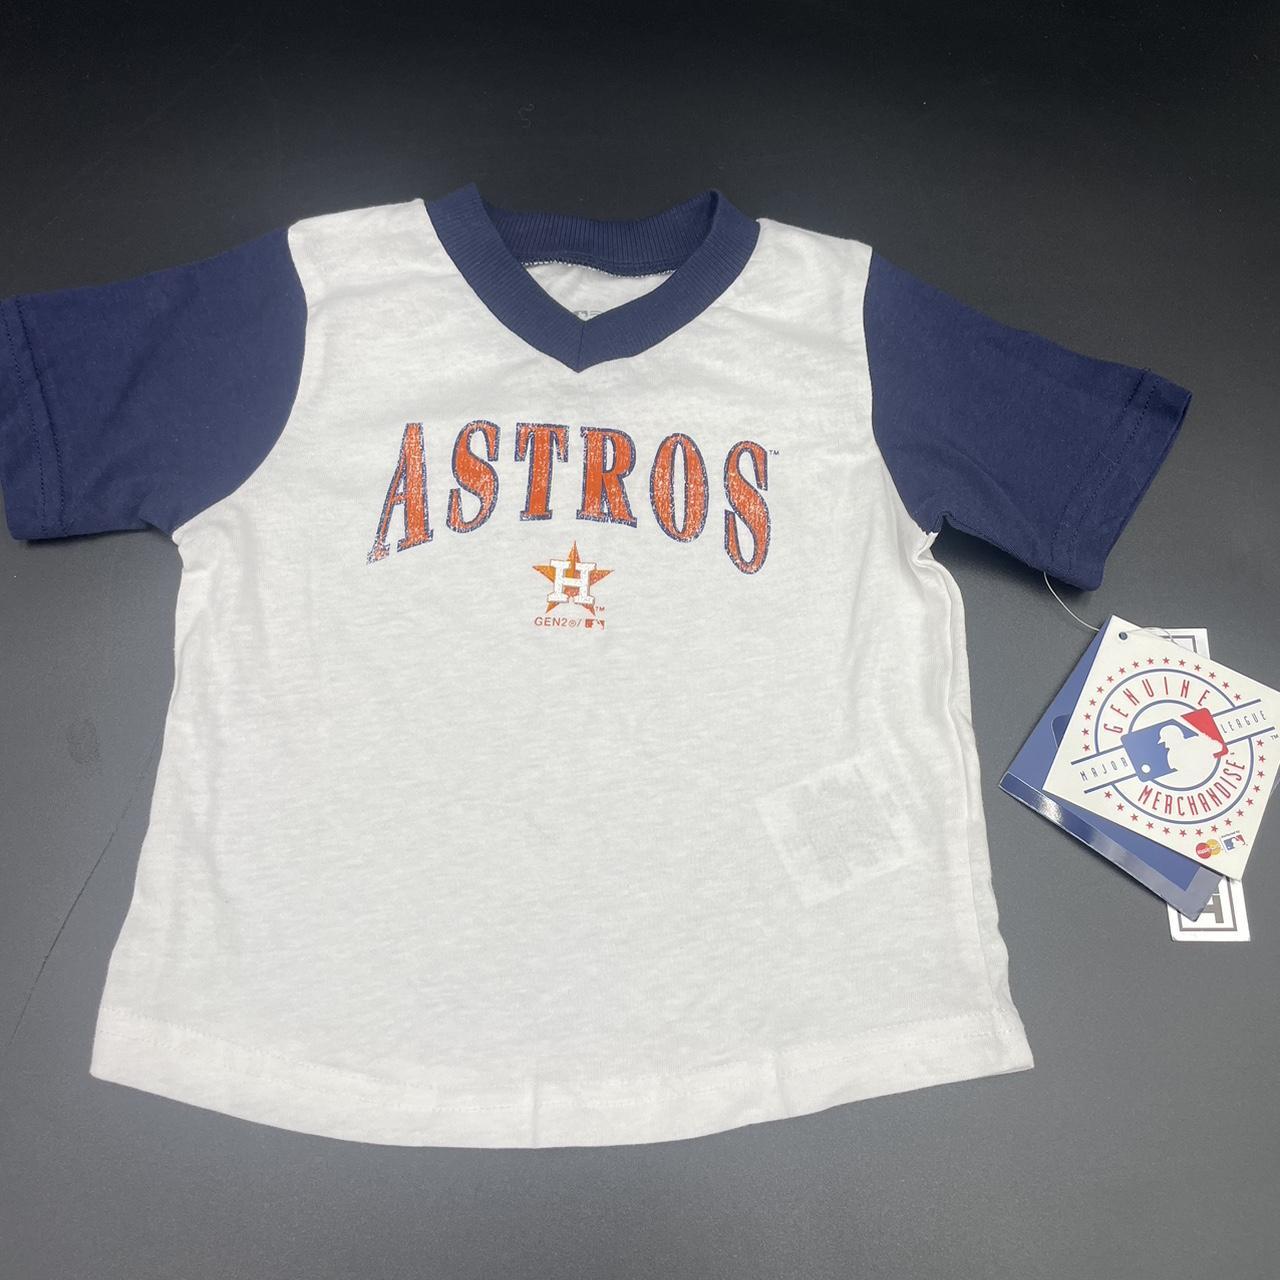 Astros Genuine Merchandise 18 Months short sleeve